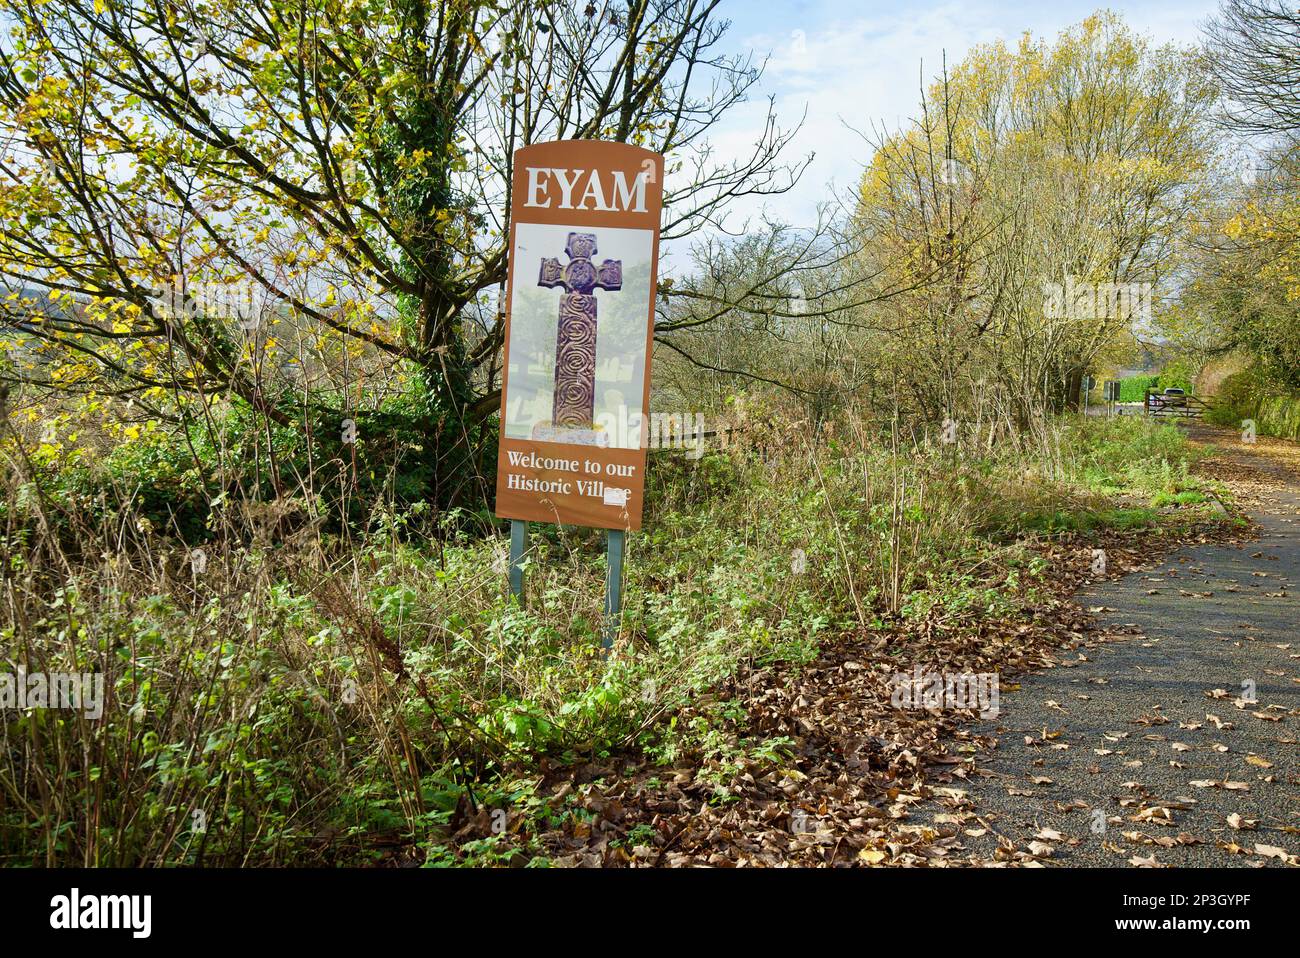 Una señal para el pueblo de Eyam que lee 'Eyam - Bienvenido a nuestro pueblo histórico'. Un pueblo británico conocido por la propagación de la peste Bubonic. Foto de stock